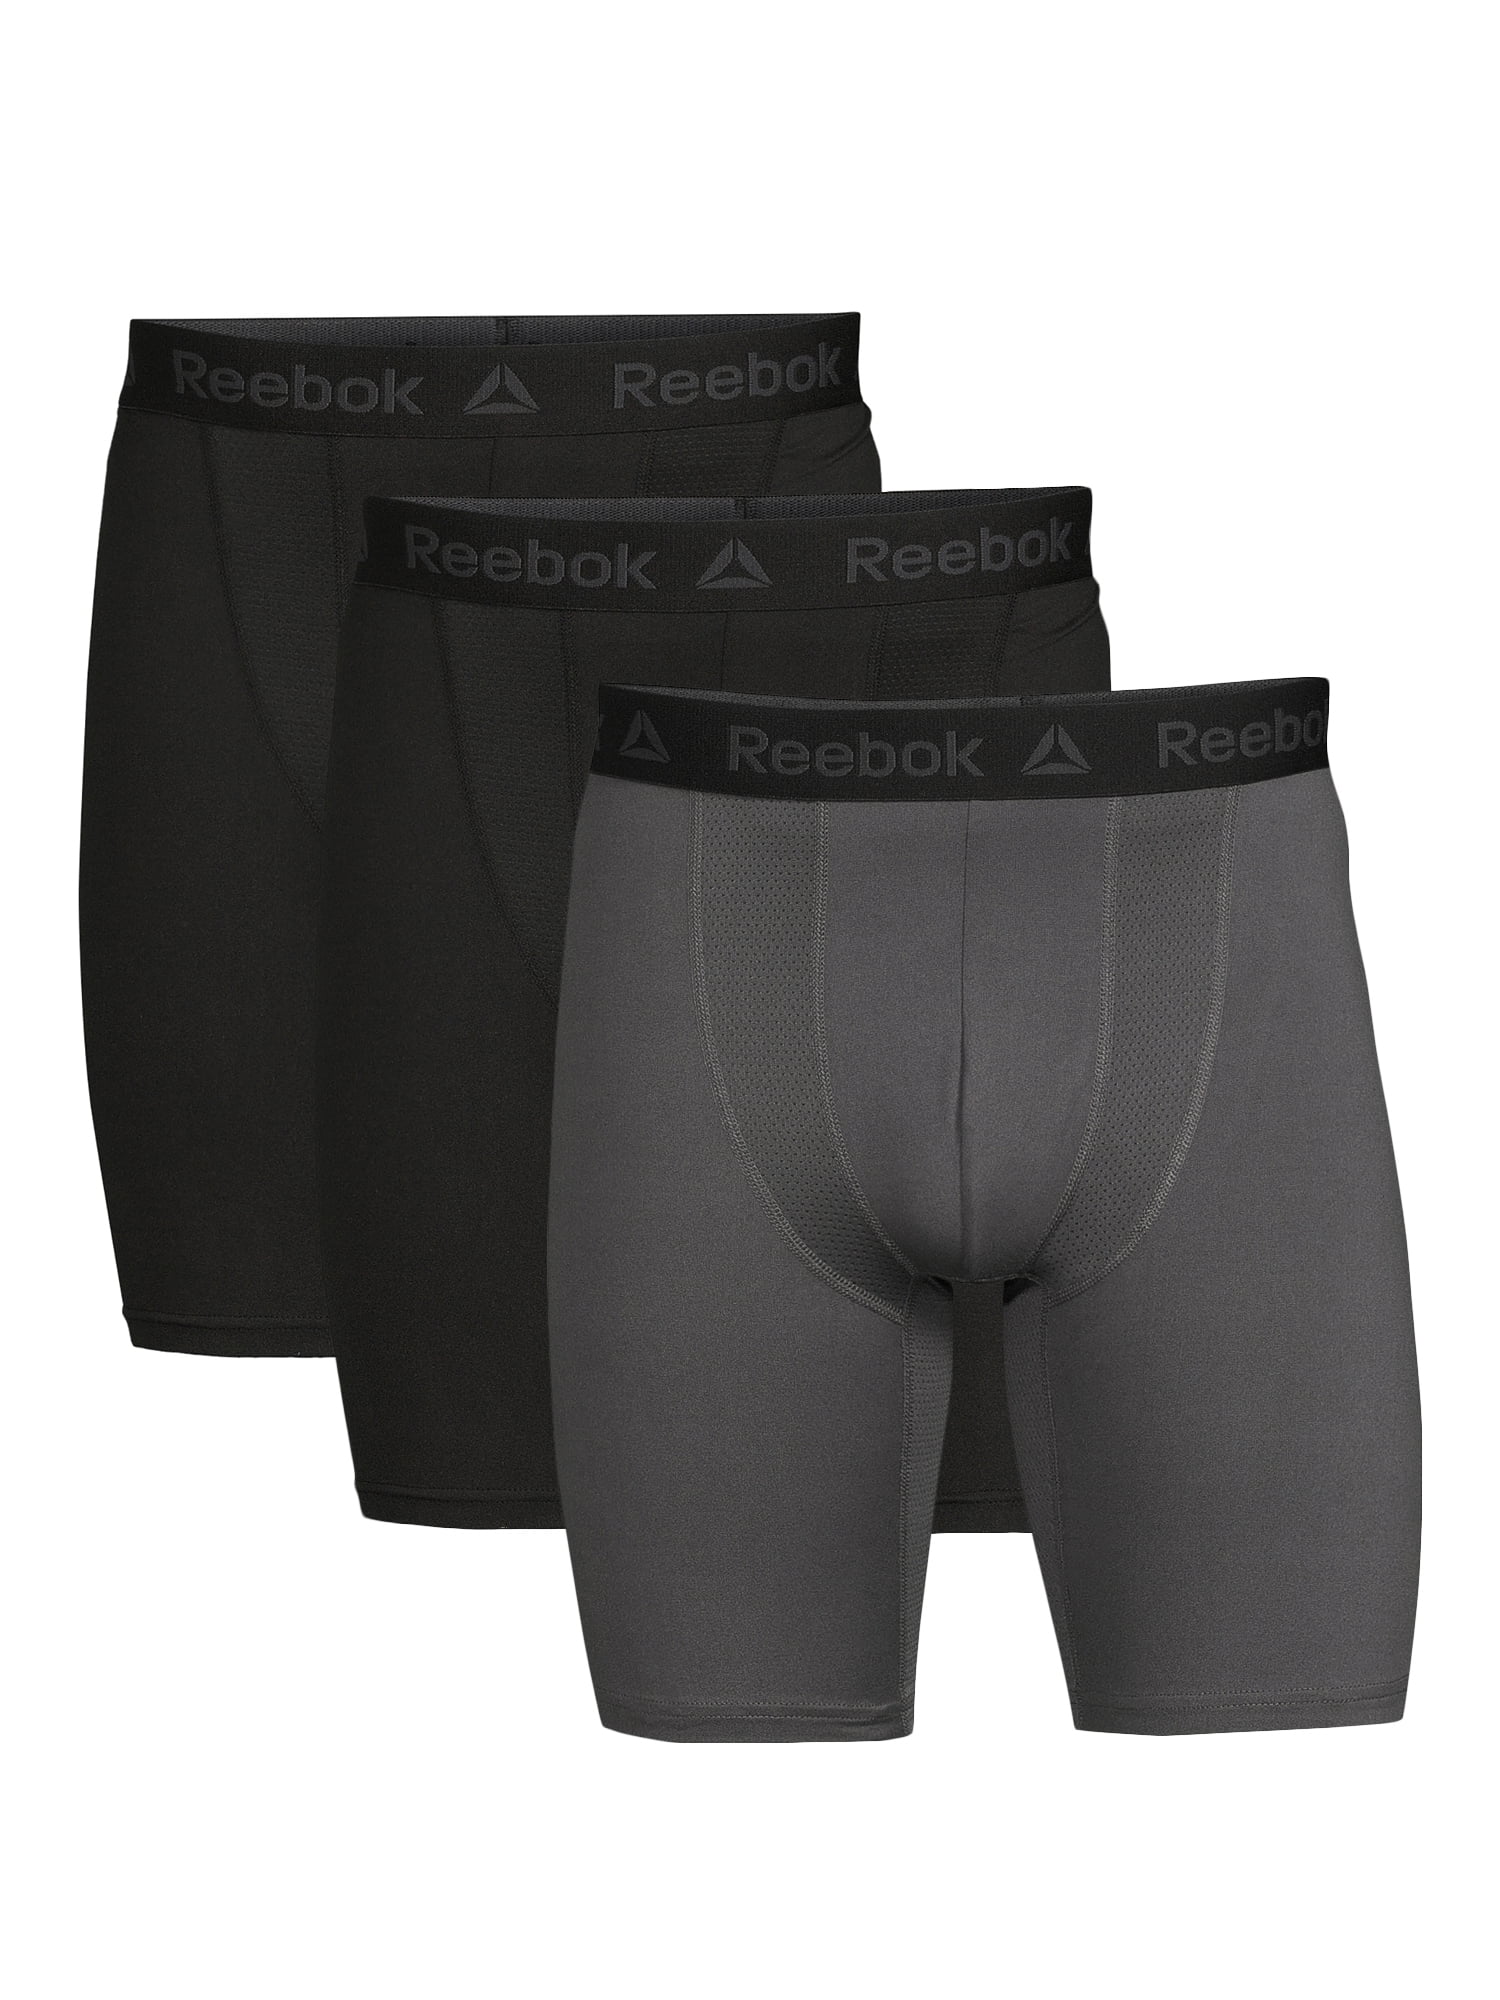 AND1 Men's Underwear Pro Platinum Boxer Briefs, 6 Pack, 6